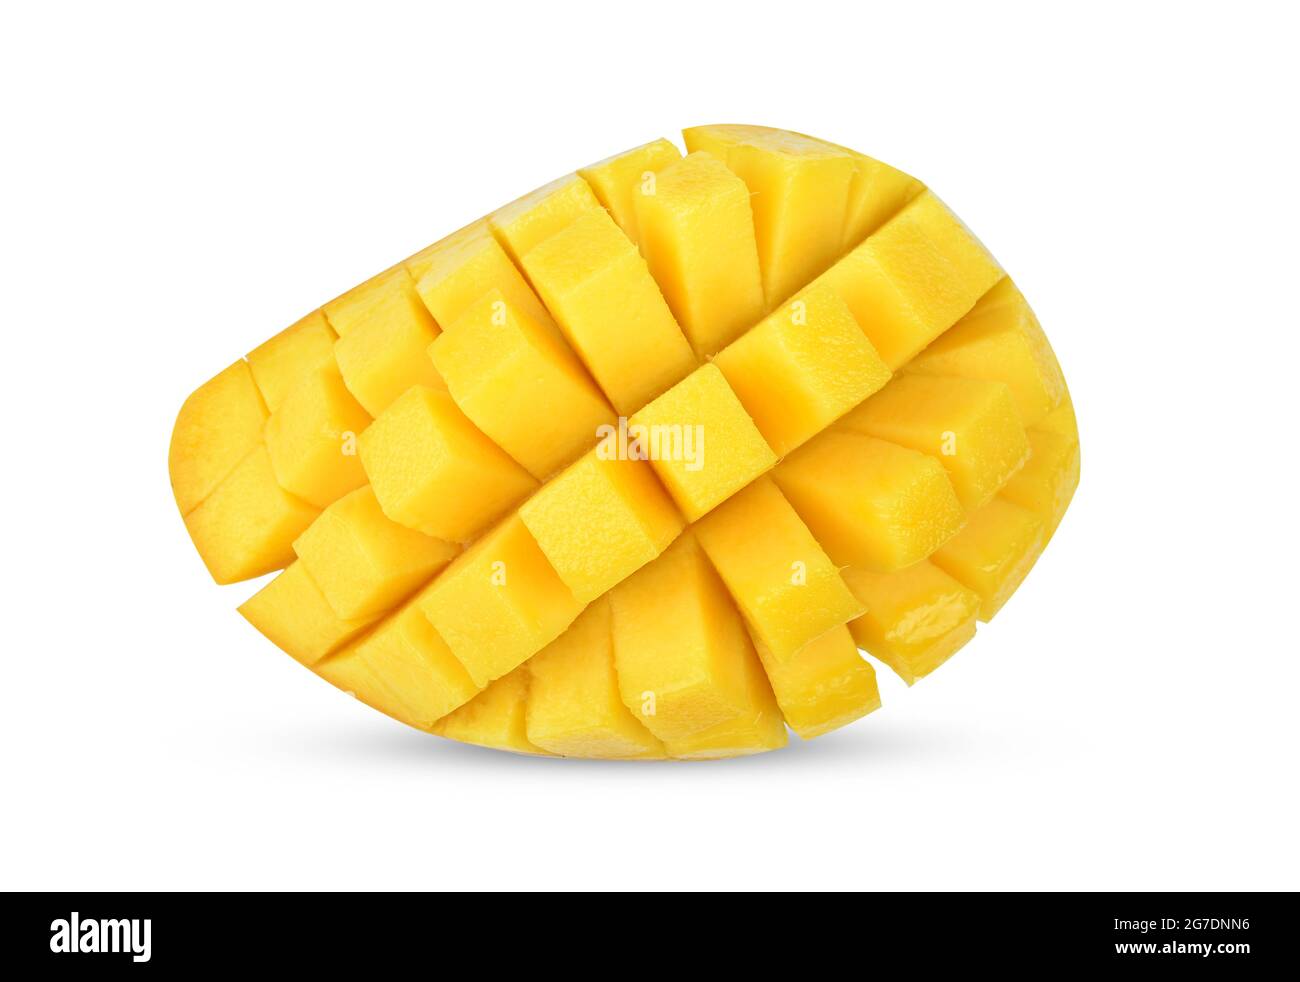 mango isolated on white background Stock Photo